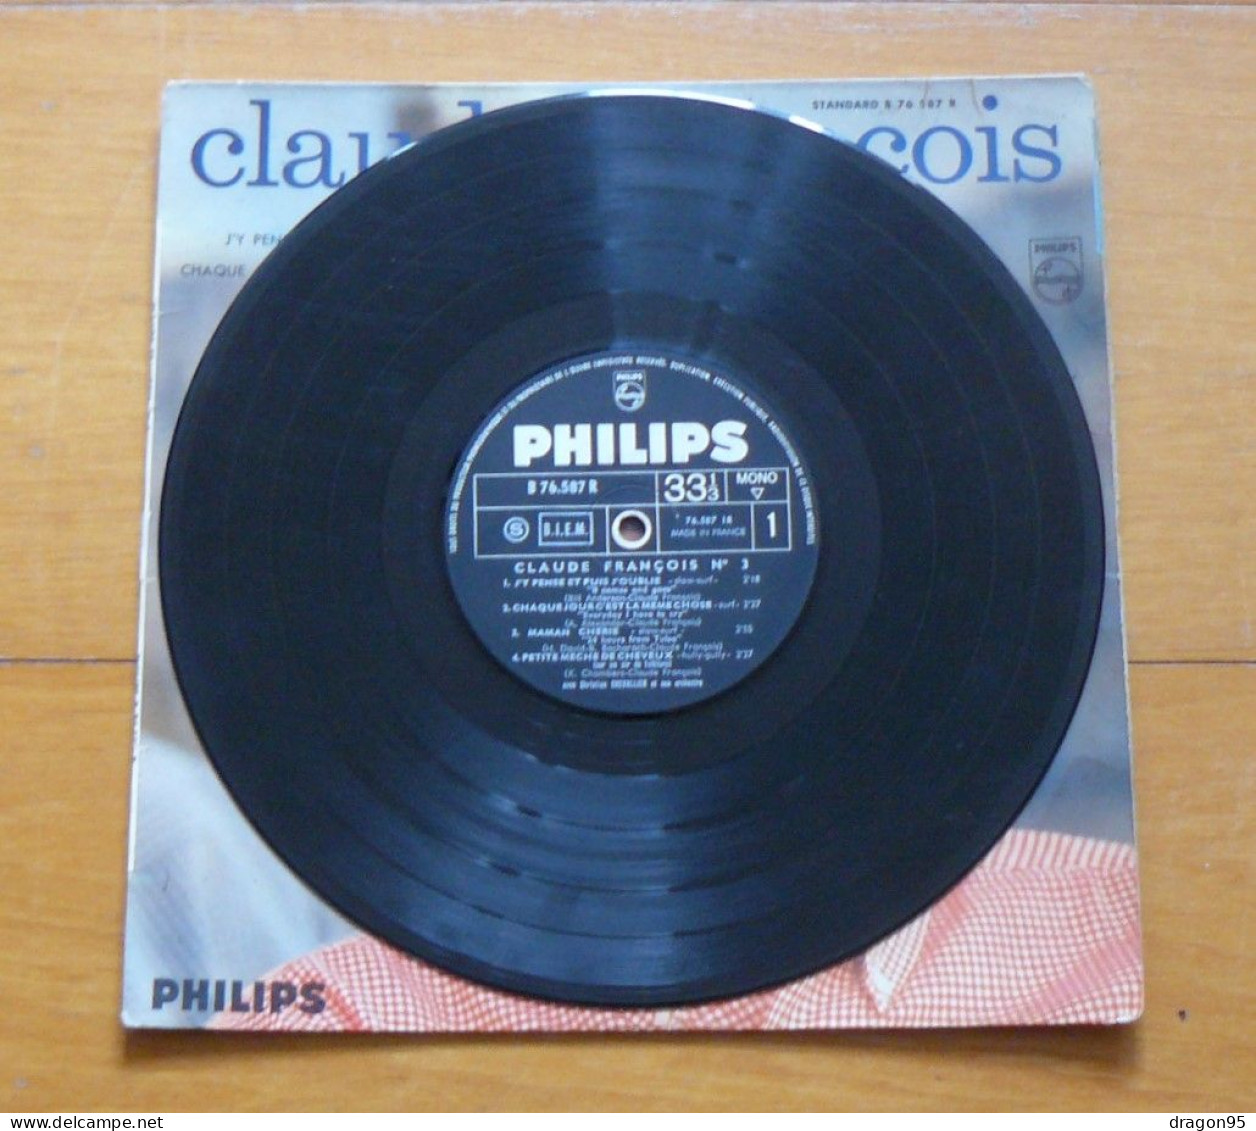 25 Cm Claude FRANCOIS : J'y Pense Et Puis J'oublie - Philips B 76.587 R - France - Other - French Music